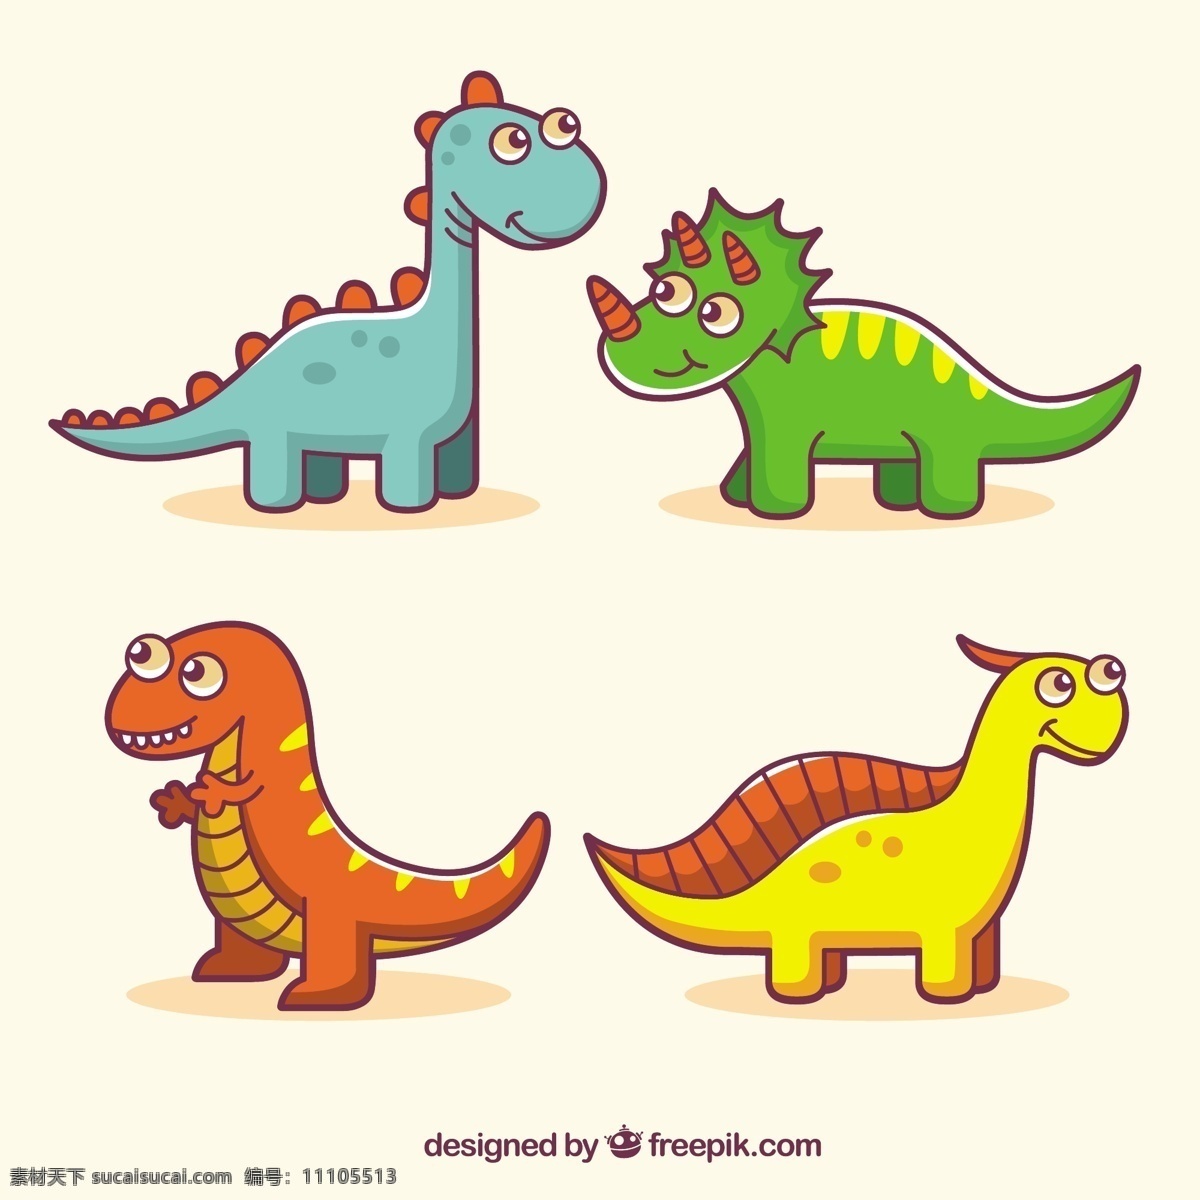 有趣 彩色 恐龙 手 自然 动物 绘制 可爱 颜色 怪物 绘画 可爱的 抽纱 野生蜥蜴 尼斯 野生动物 大 迪诺